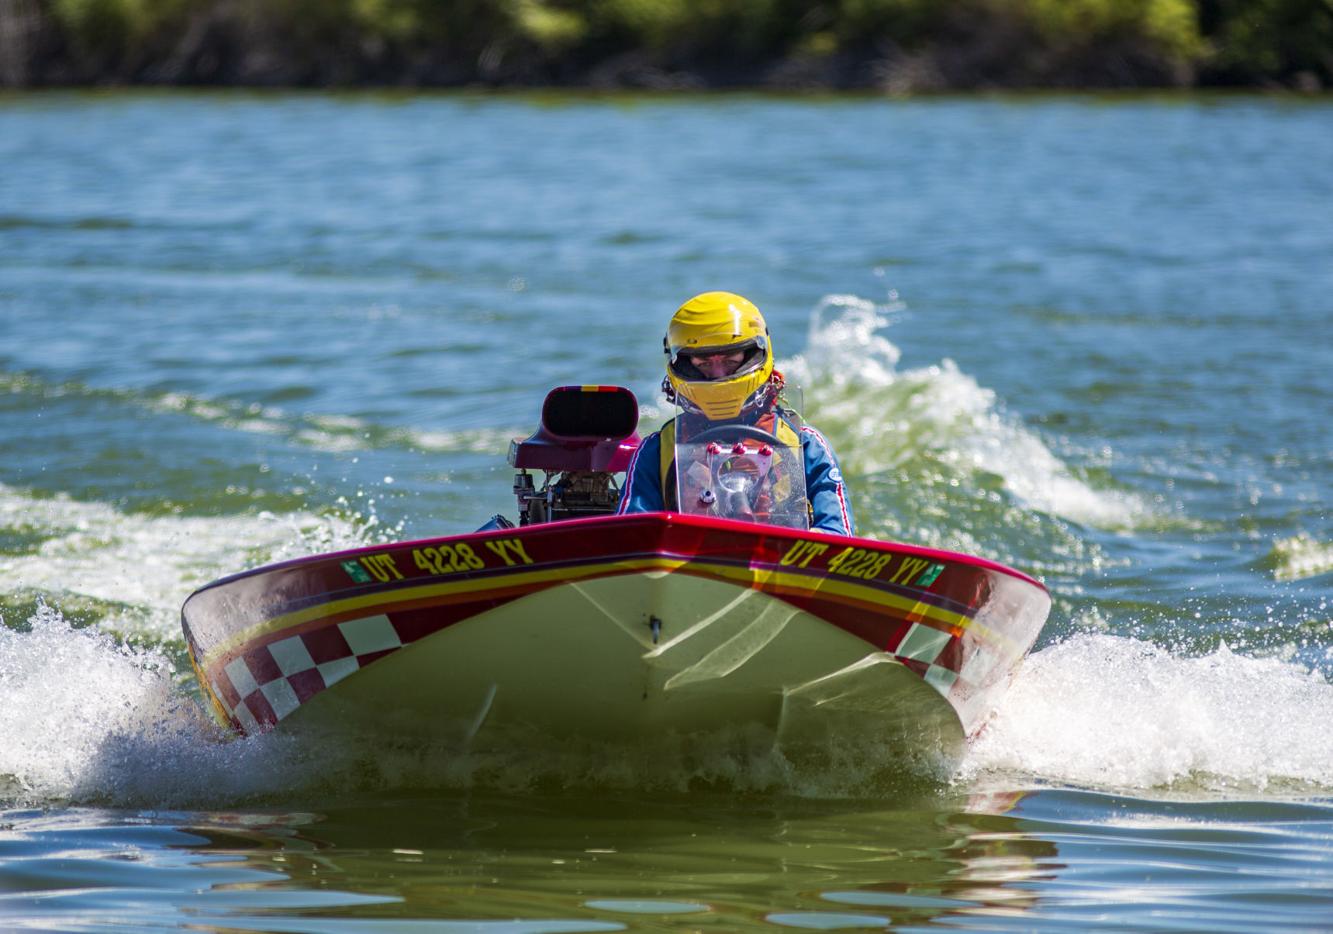 PHOTOS Idaho Regatta brings boat racing to Burley